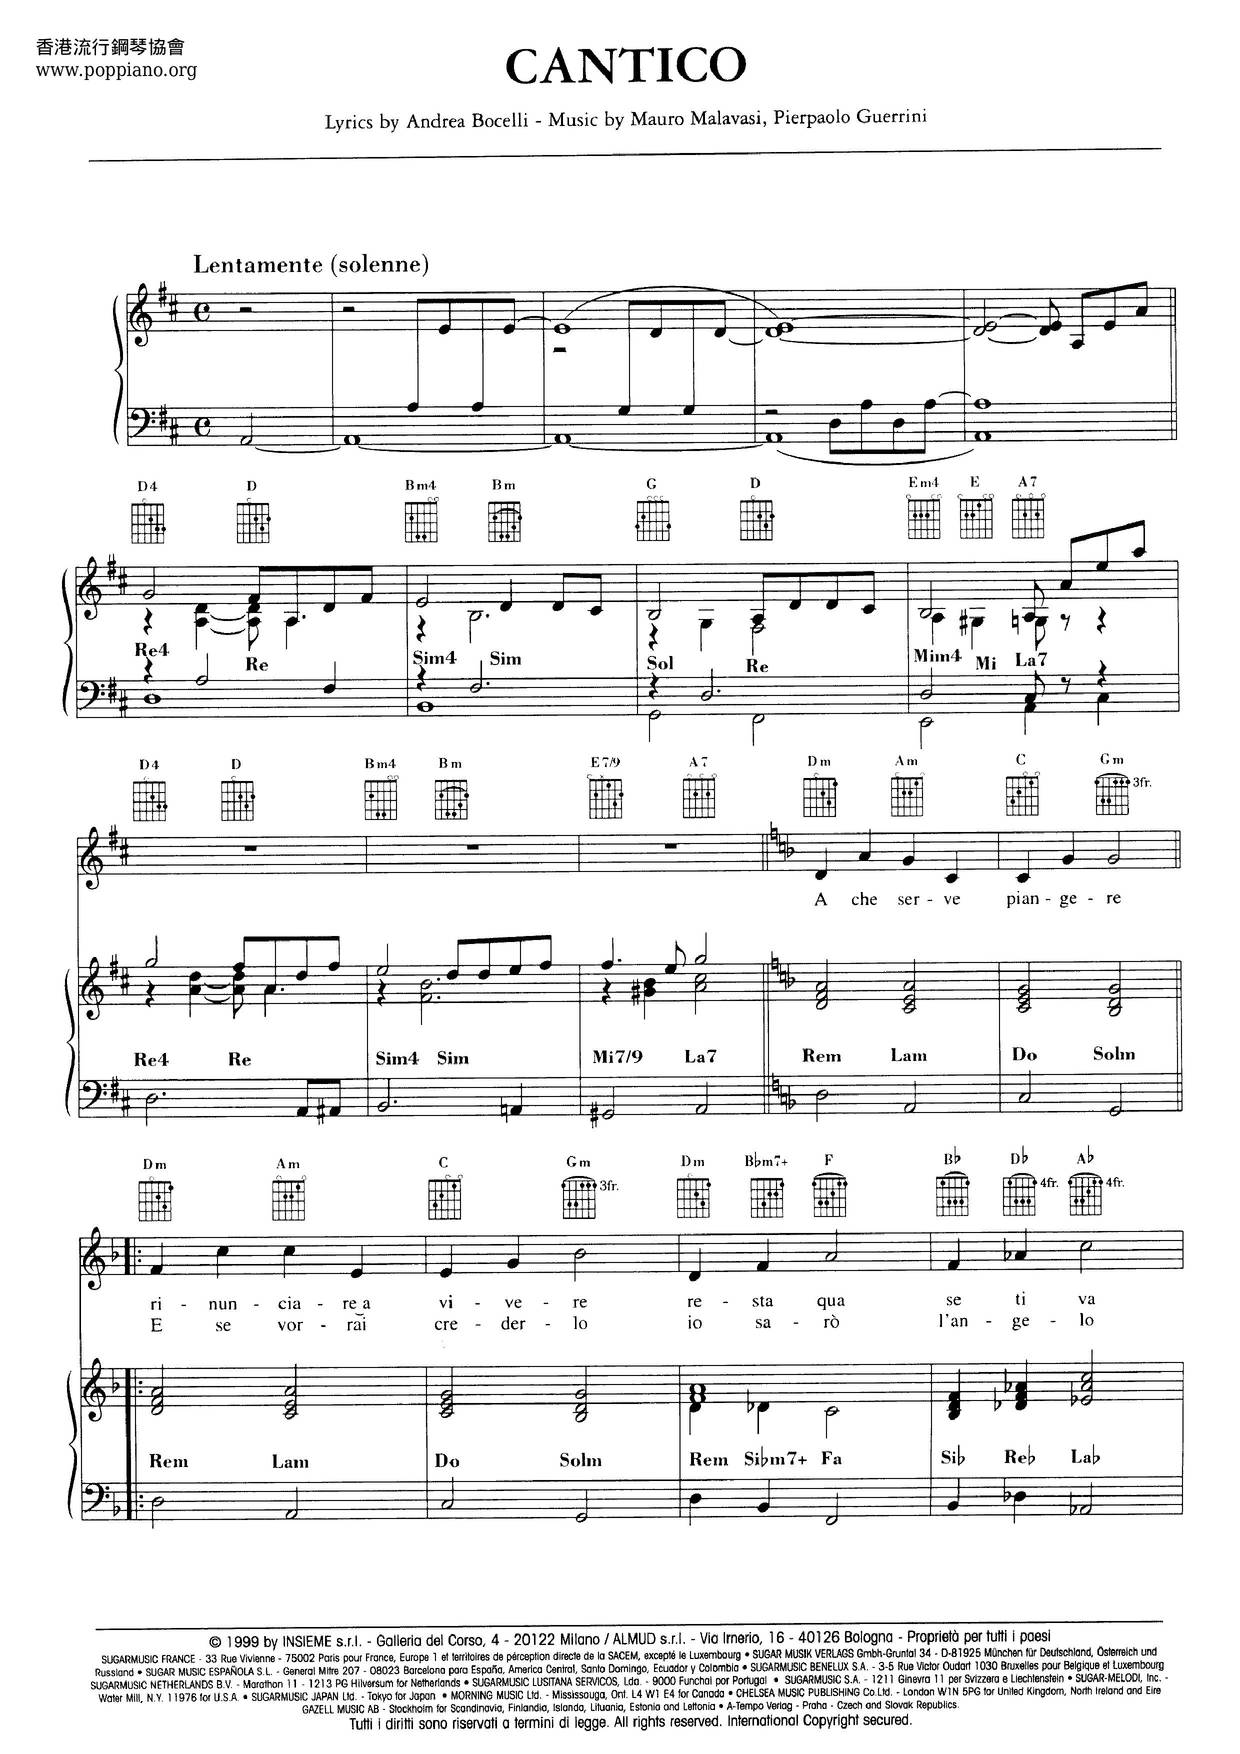 Cantico Score